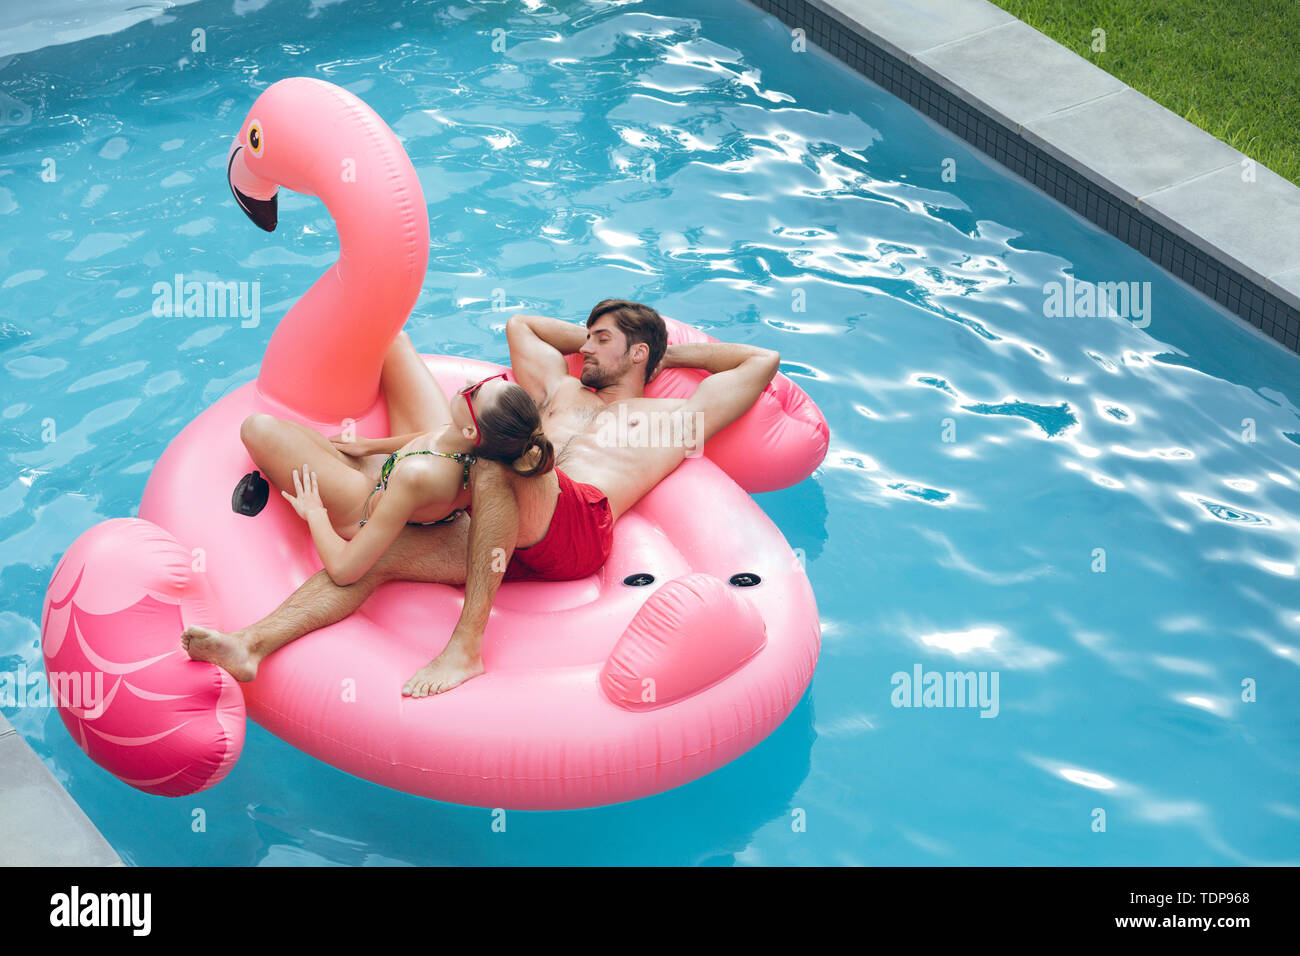 Paar zusammen Schlafen auf einer aufblasbaren Rohr im Pool Stockfoto